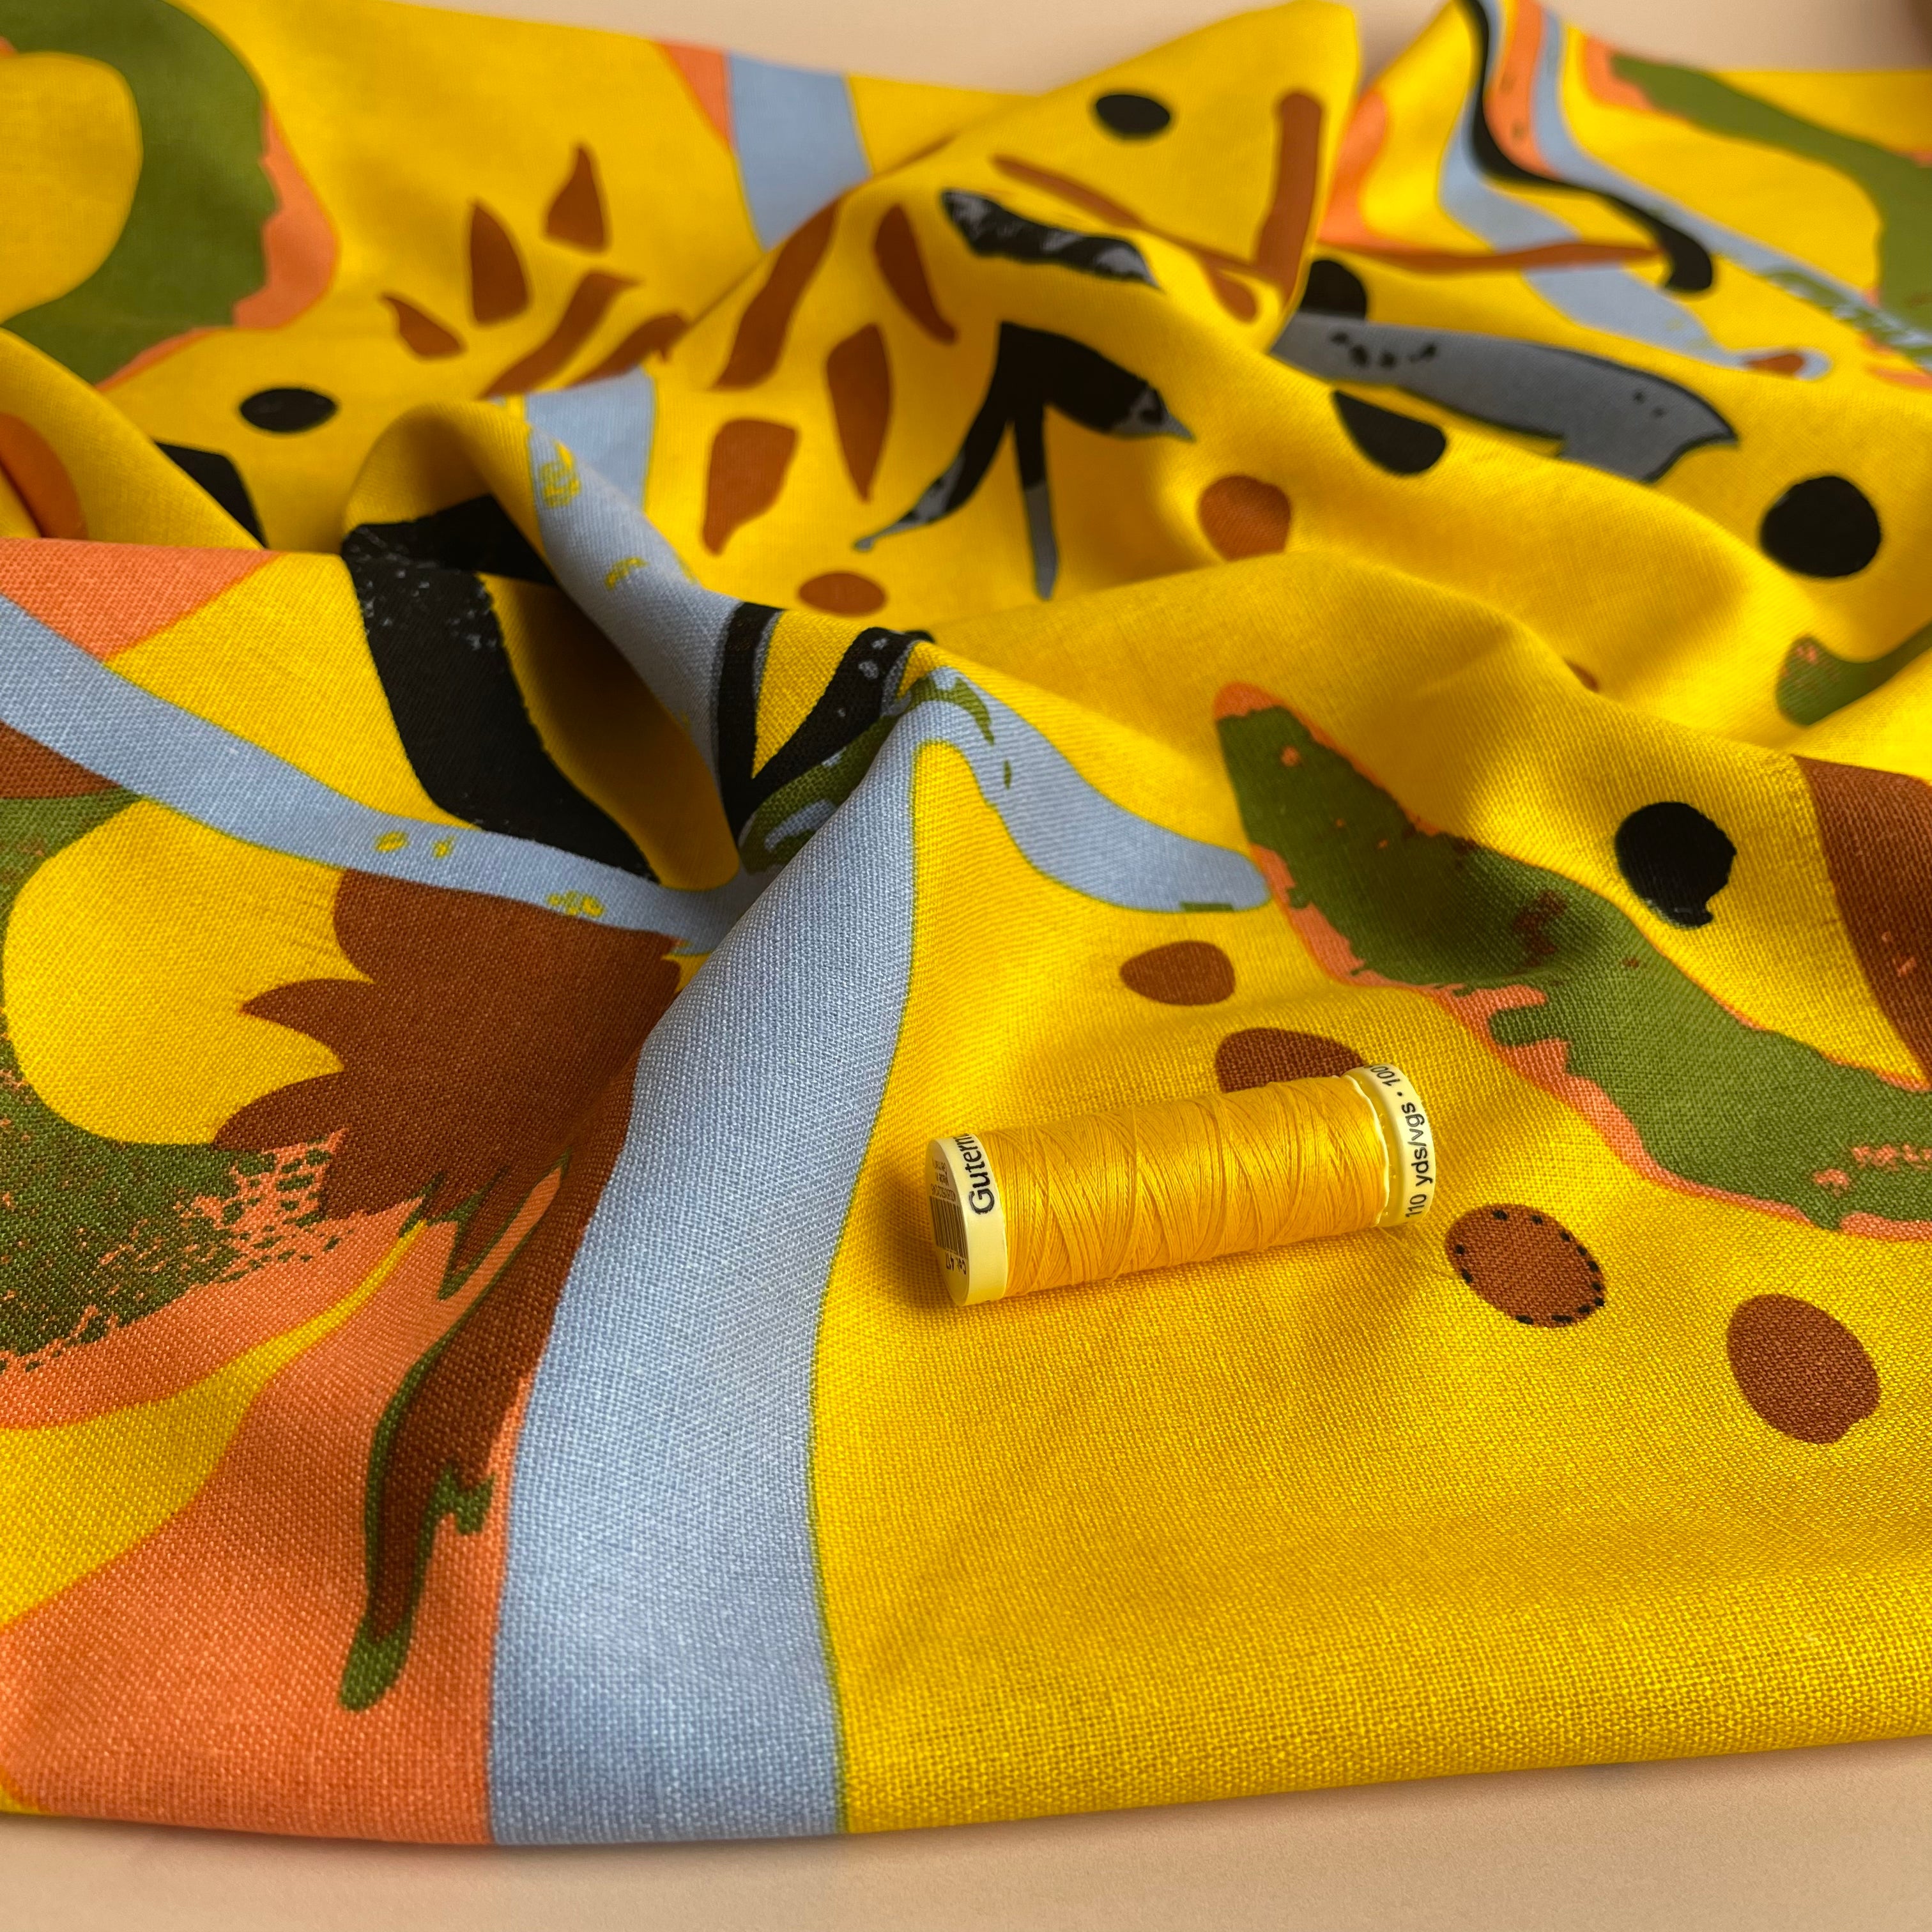 REMNANT 1.62 Metres - Modern Art Yellow Viscose Linen Blend Fabric